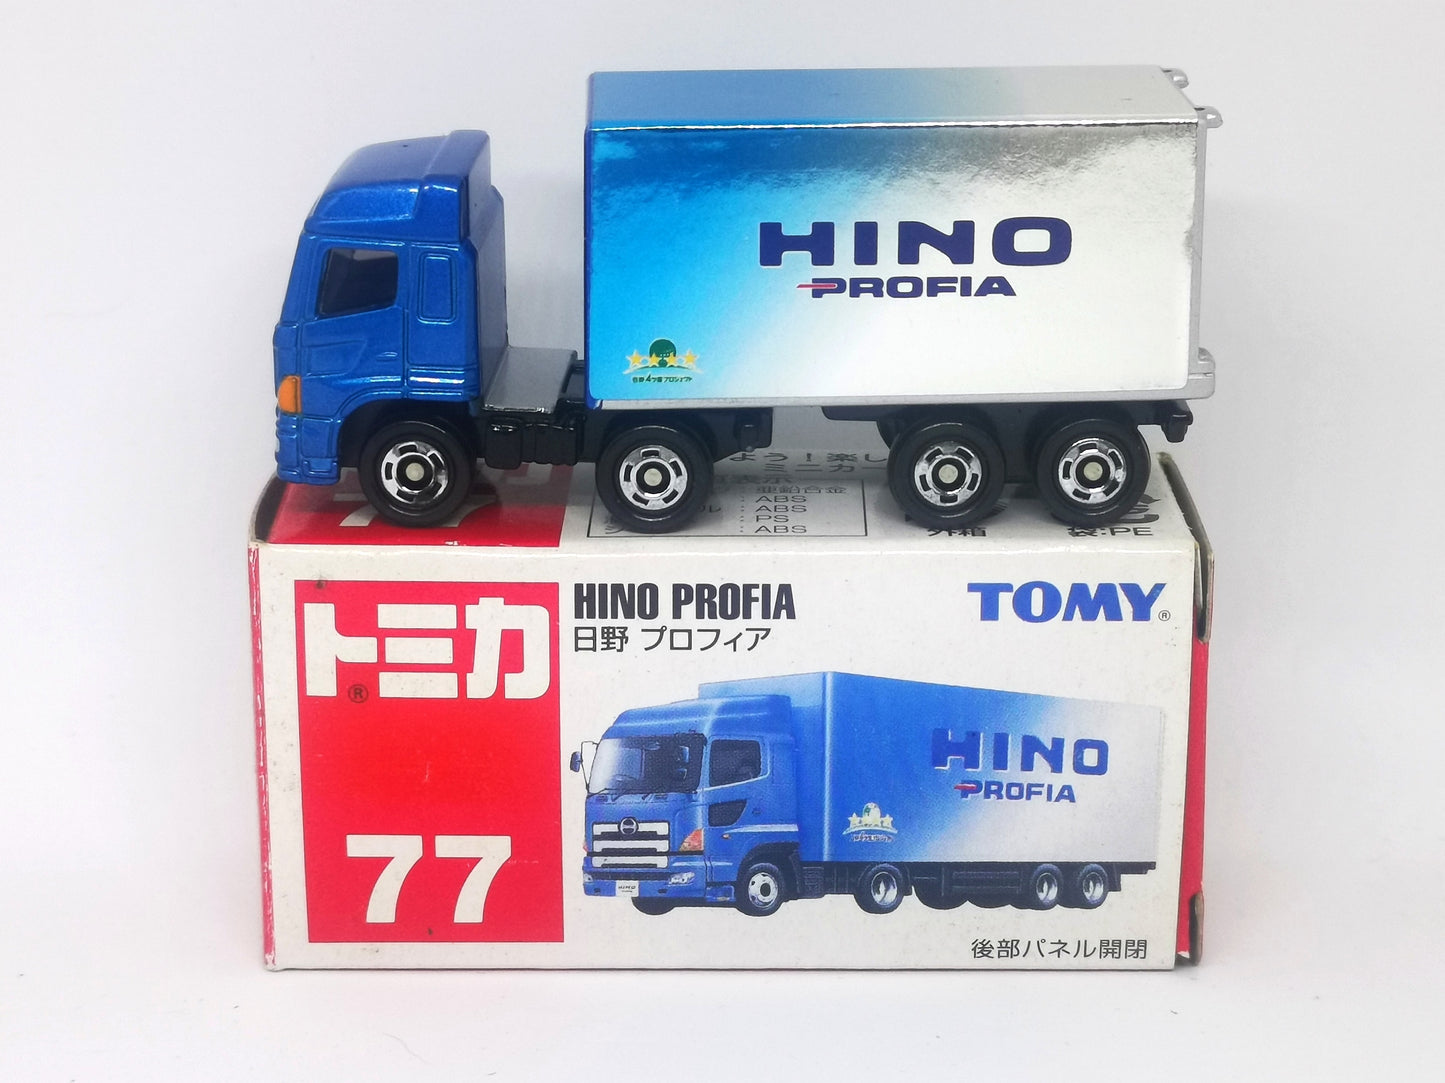 Tomica No.77 Hino Profia Truck